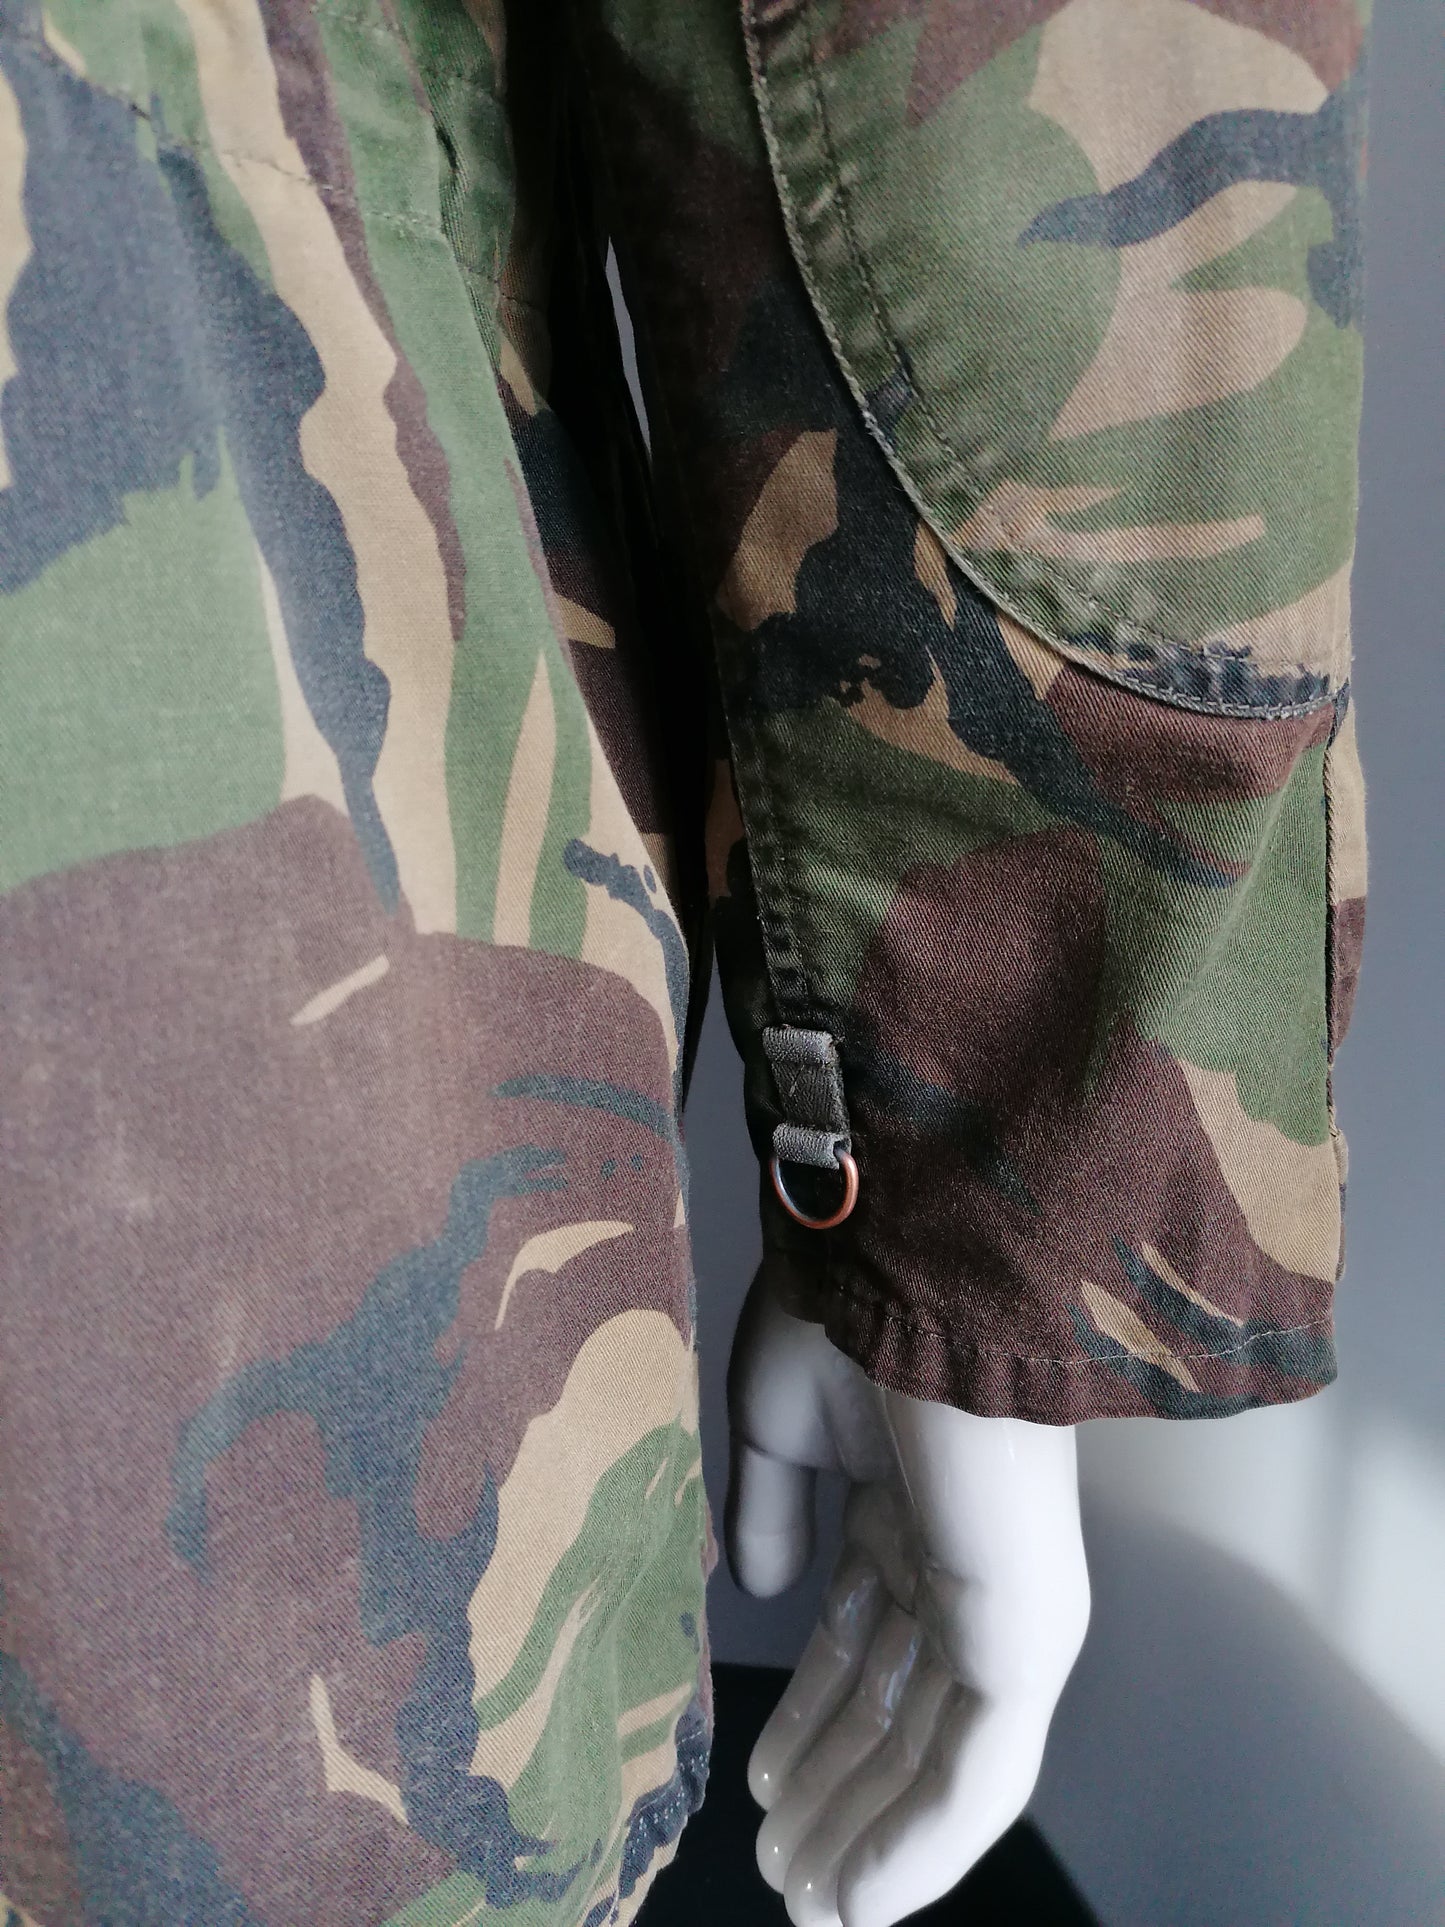 Vintage ejército / ejército chaqueta incondicional. Cierre doble. Impresión de camuflaje verde. Tamaño M / L. Original